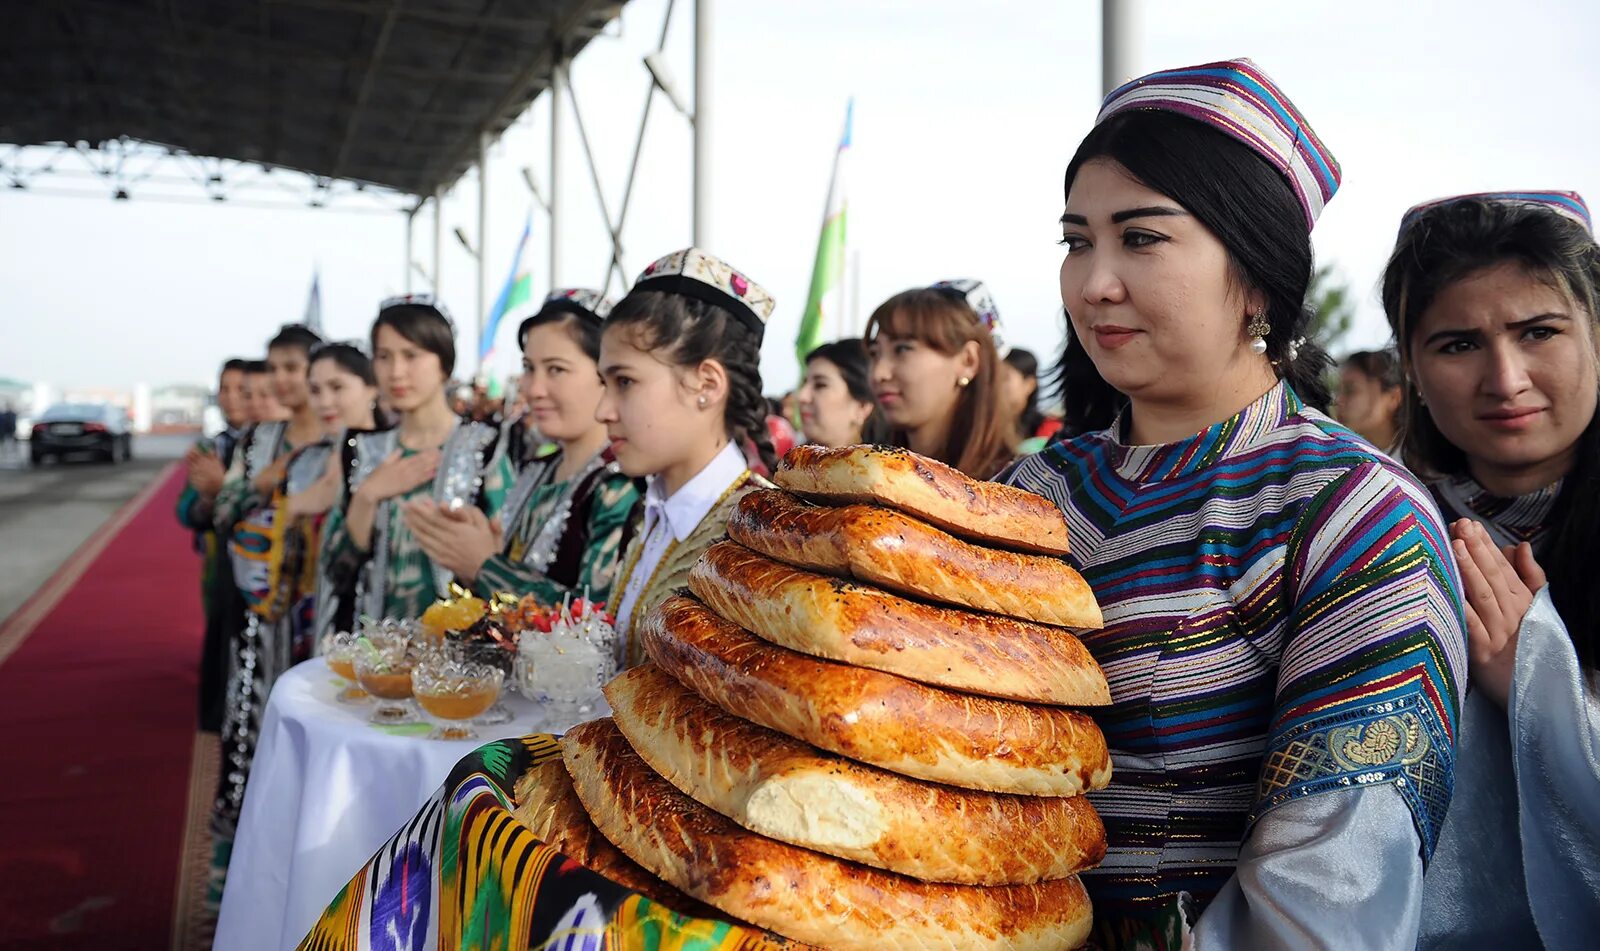 Узбекский казахстан